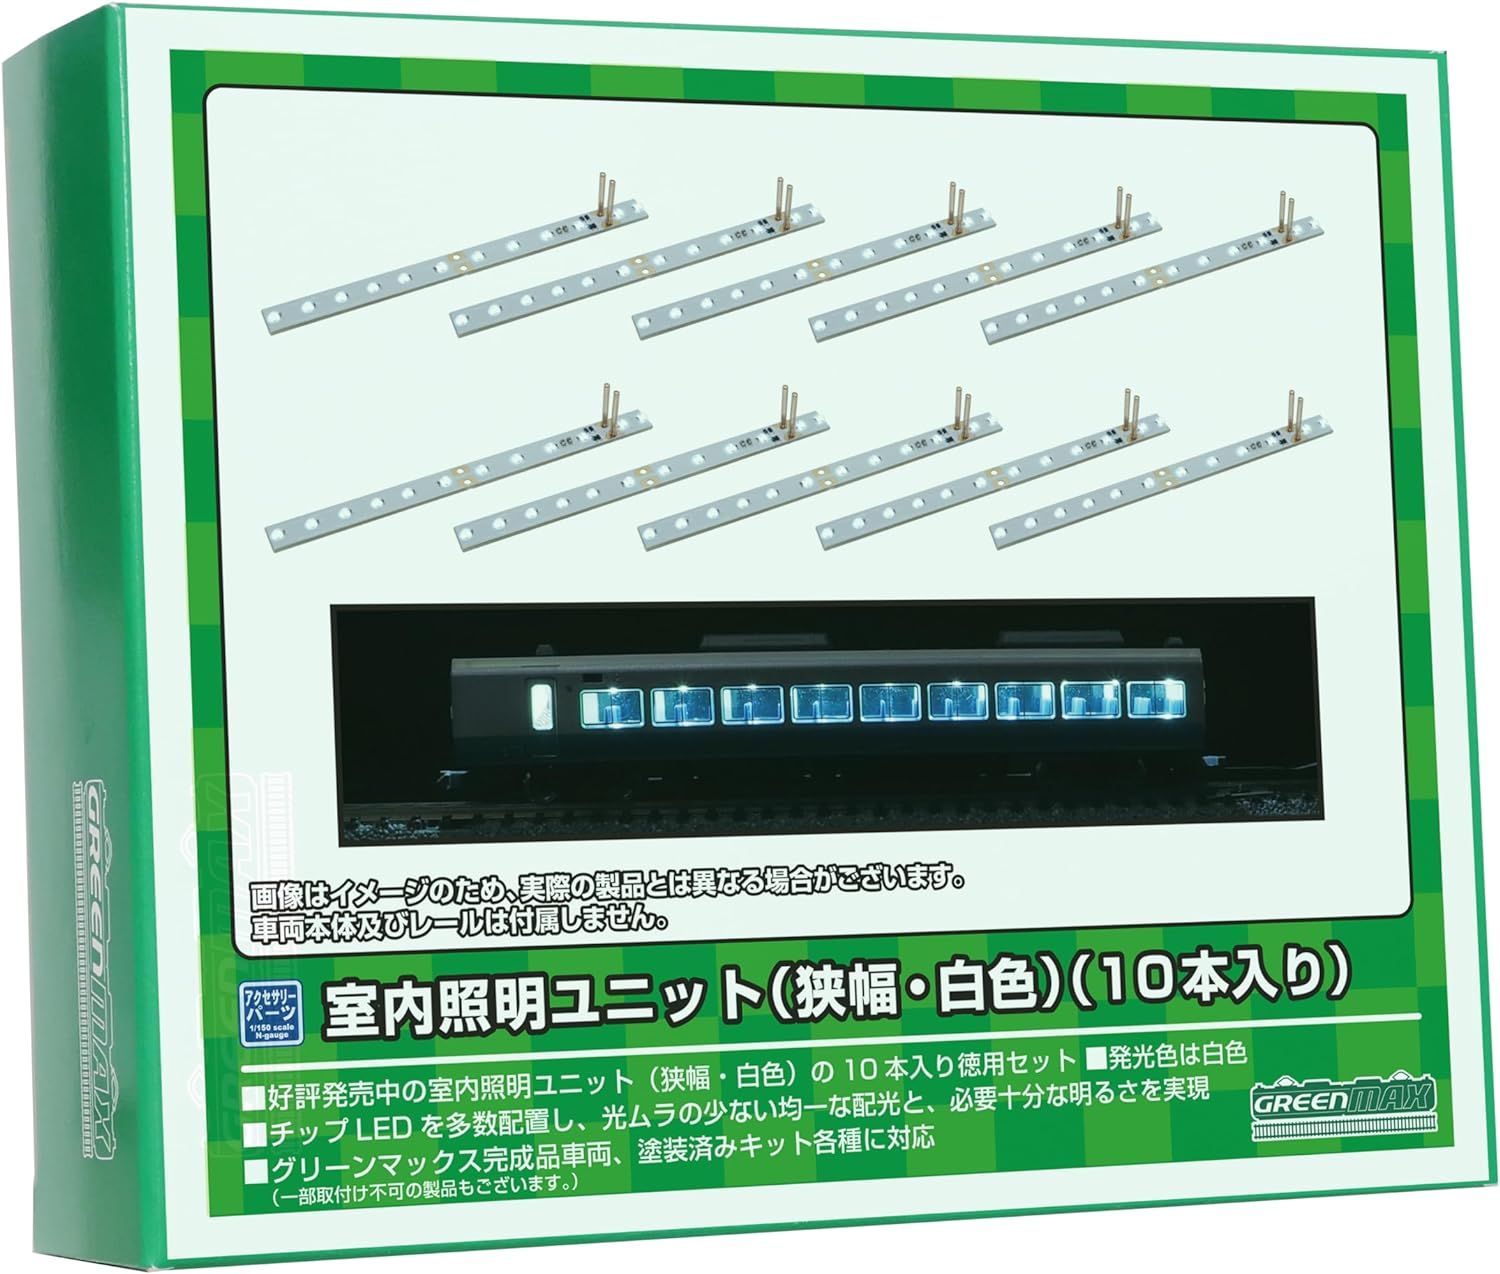 GreenMax 8463 N Gauge Indoor Lighting Unit (Narrow Wide, White) (10 Pieces) Model Railway Supplies - BanzaiHobby